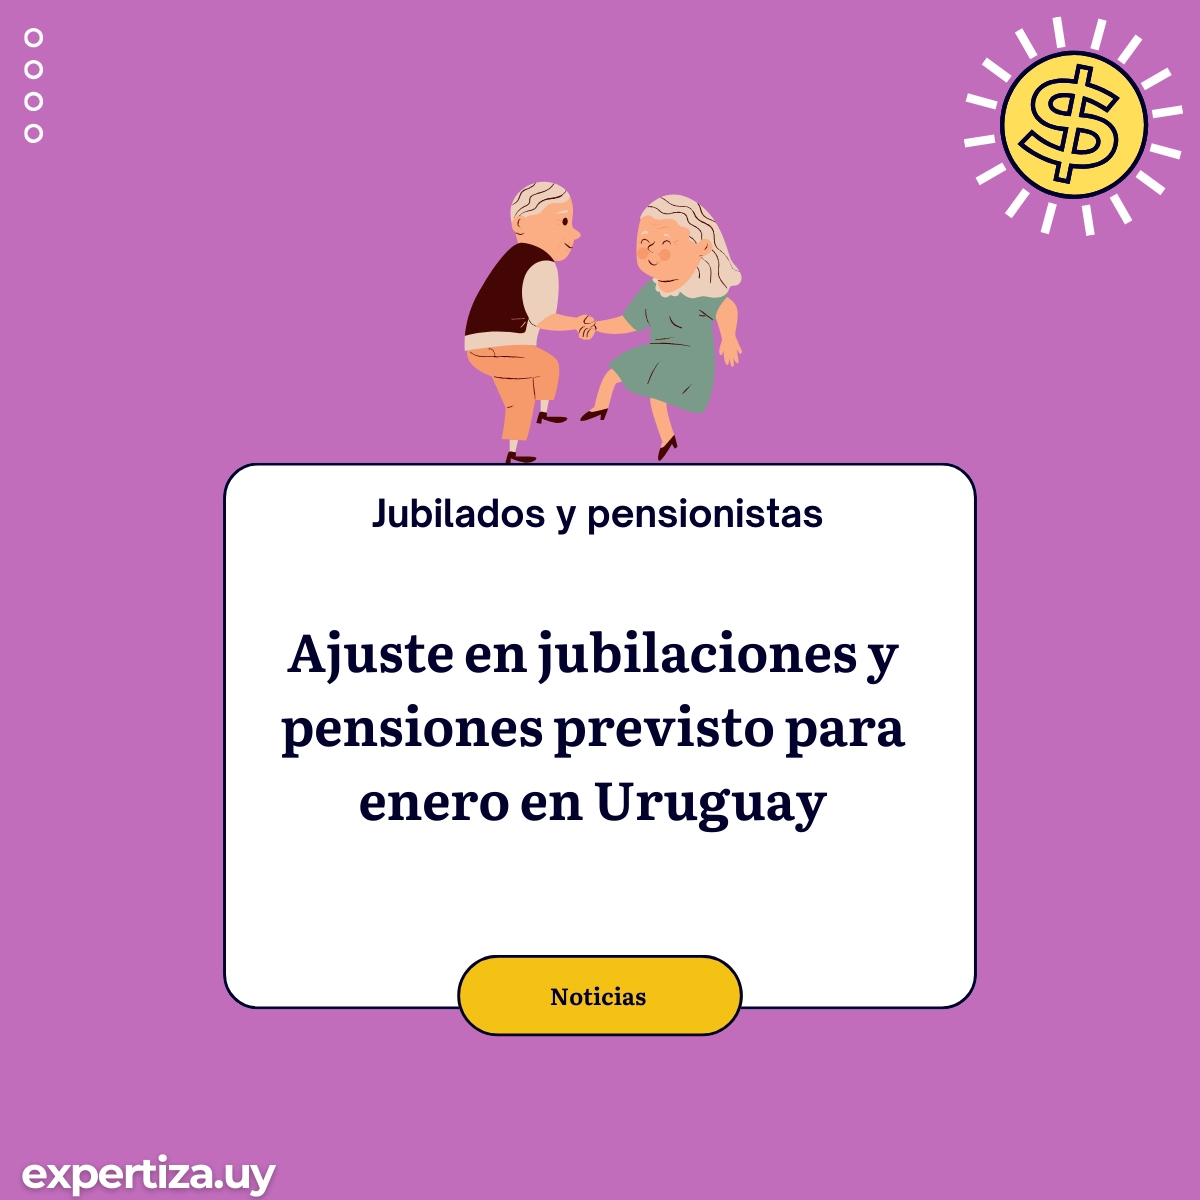 Ajuste en jubilaciones y pensiones previsto para enero en Uruguay.